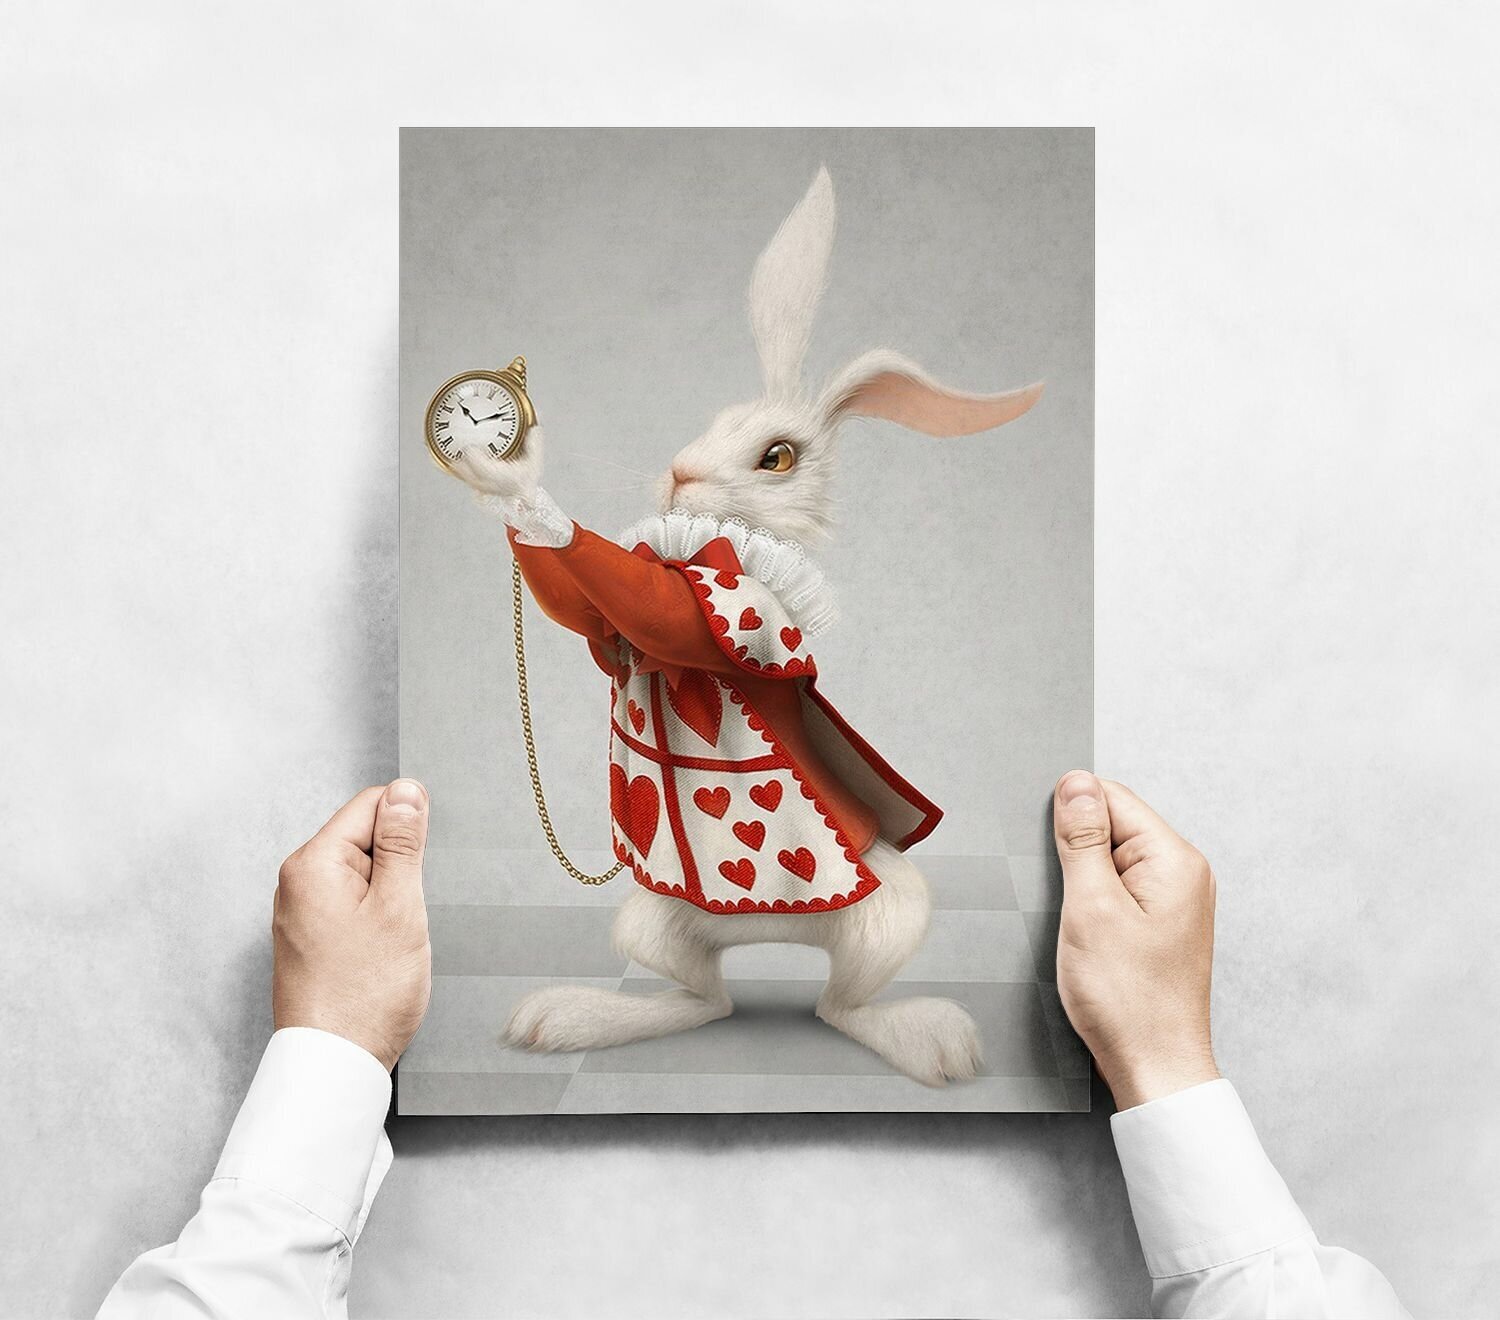 Плакат "Алиса в Стране чудес" формата А3 (30х42 см) без рамы